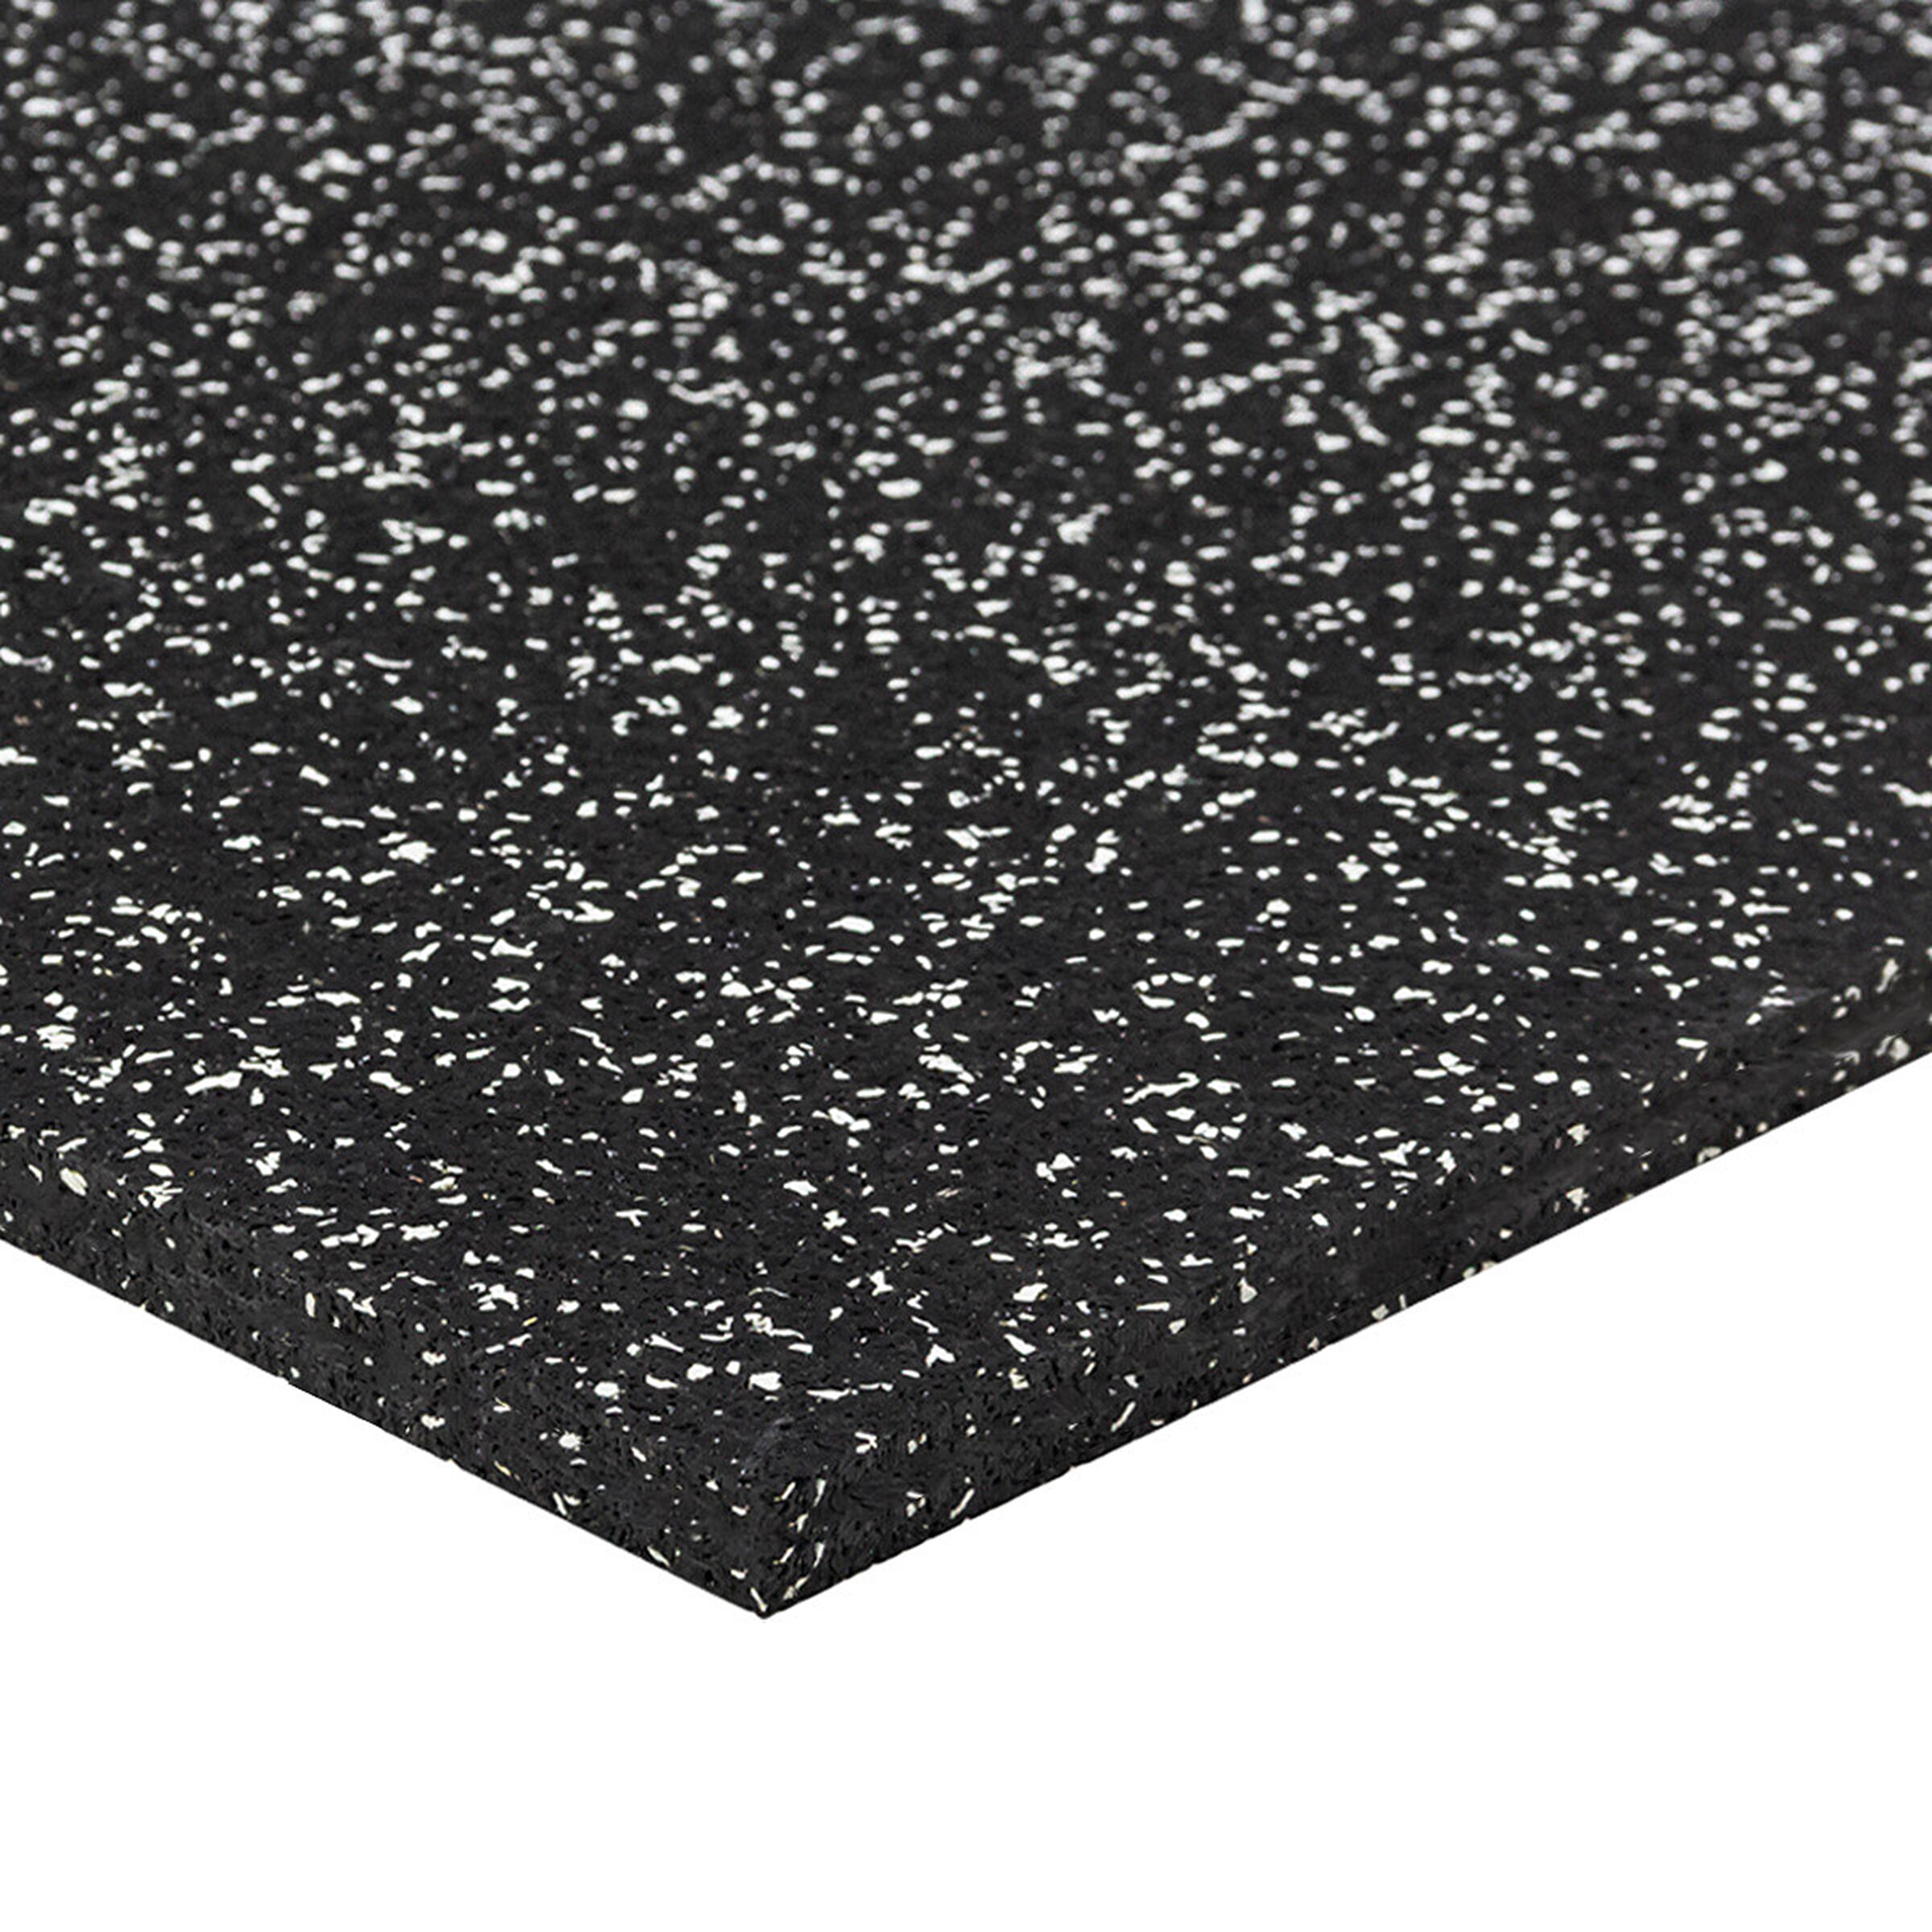 Černo-bílá gumová puzzle modulová dlažba FLOMA SF1050 FitFlo - délka 50 cm, šířka 50 cm, výška 1,6 cm